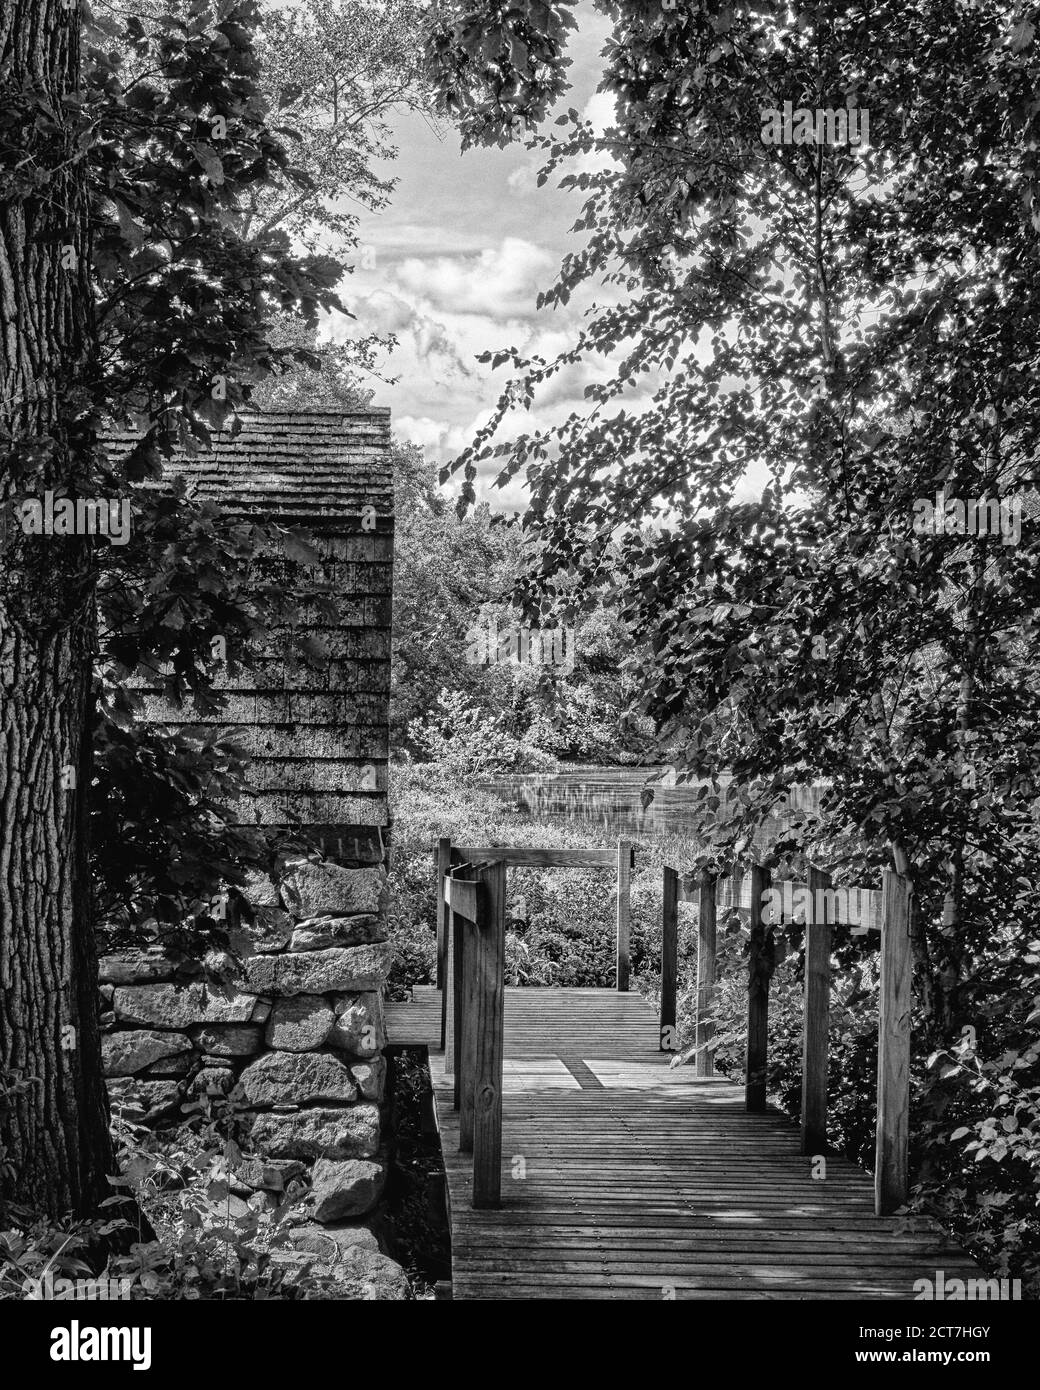 Une passerelle cachée vers une petite maison en bois sur la rivière Concord dans le parc national historique de Minuteman. La végétation luxuriante et les flux remplissent le backg Banque D'Images